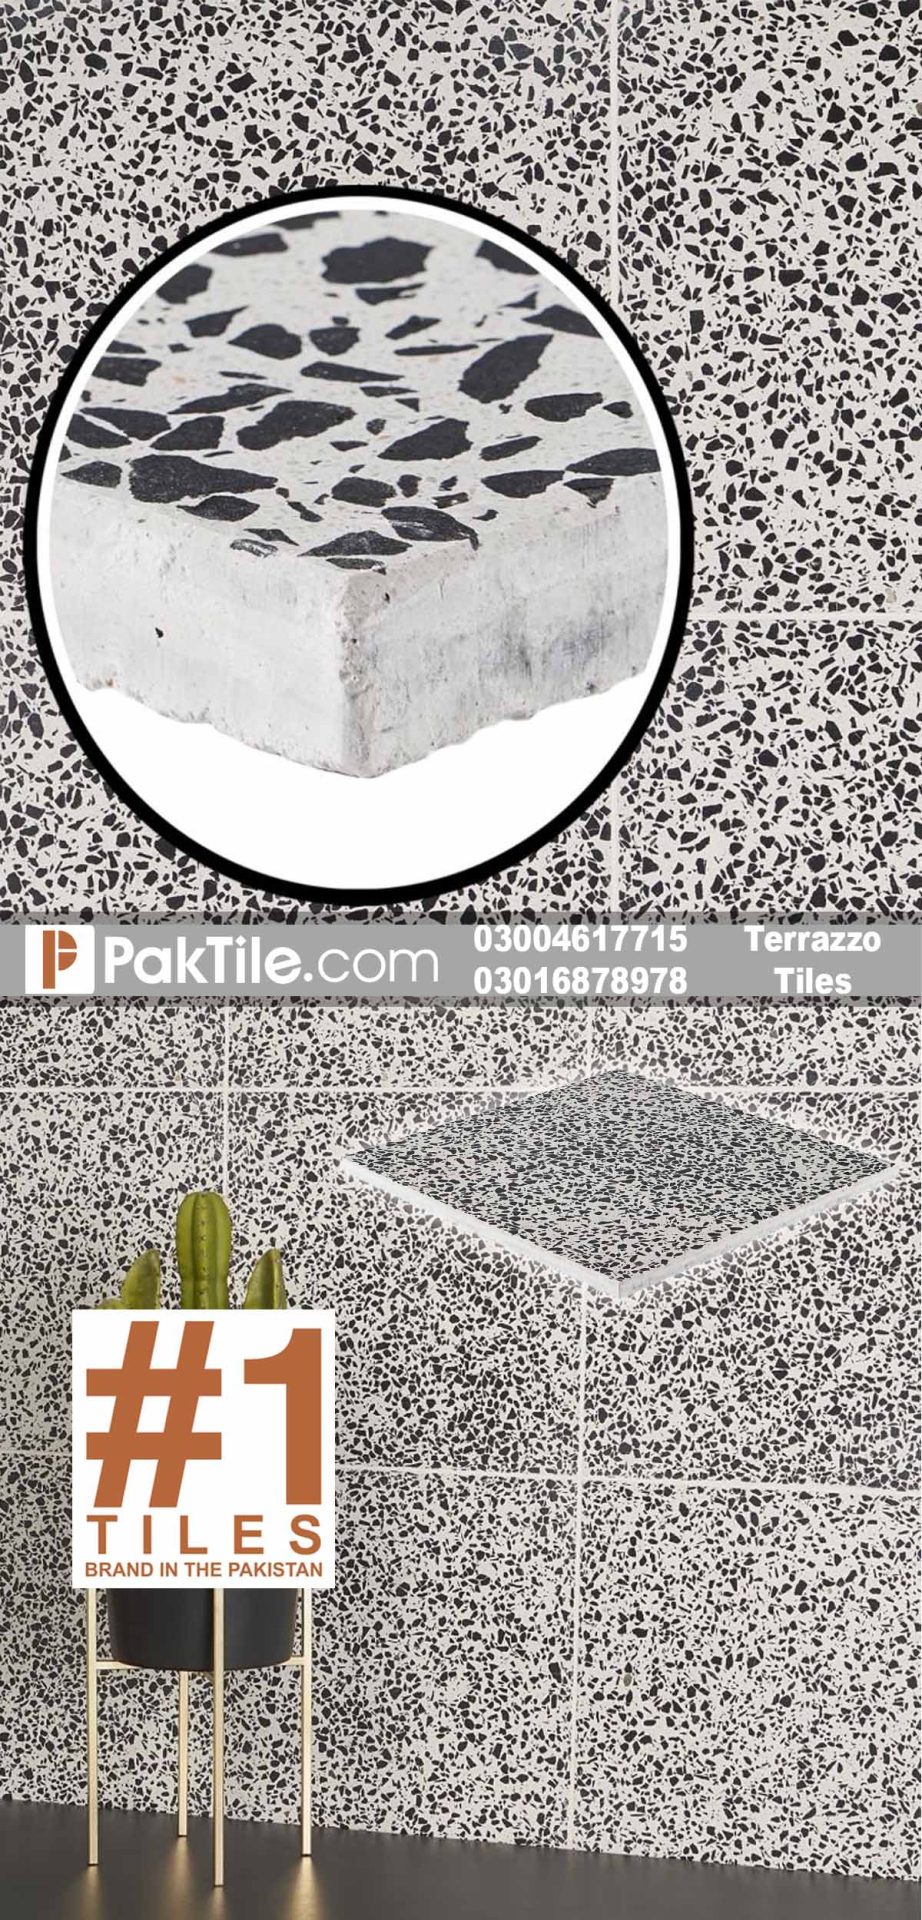 Terrazzo floor and wall tiles design in pakistan